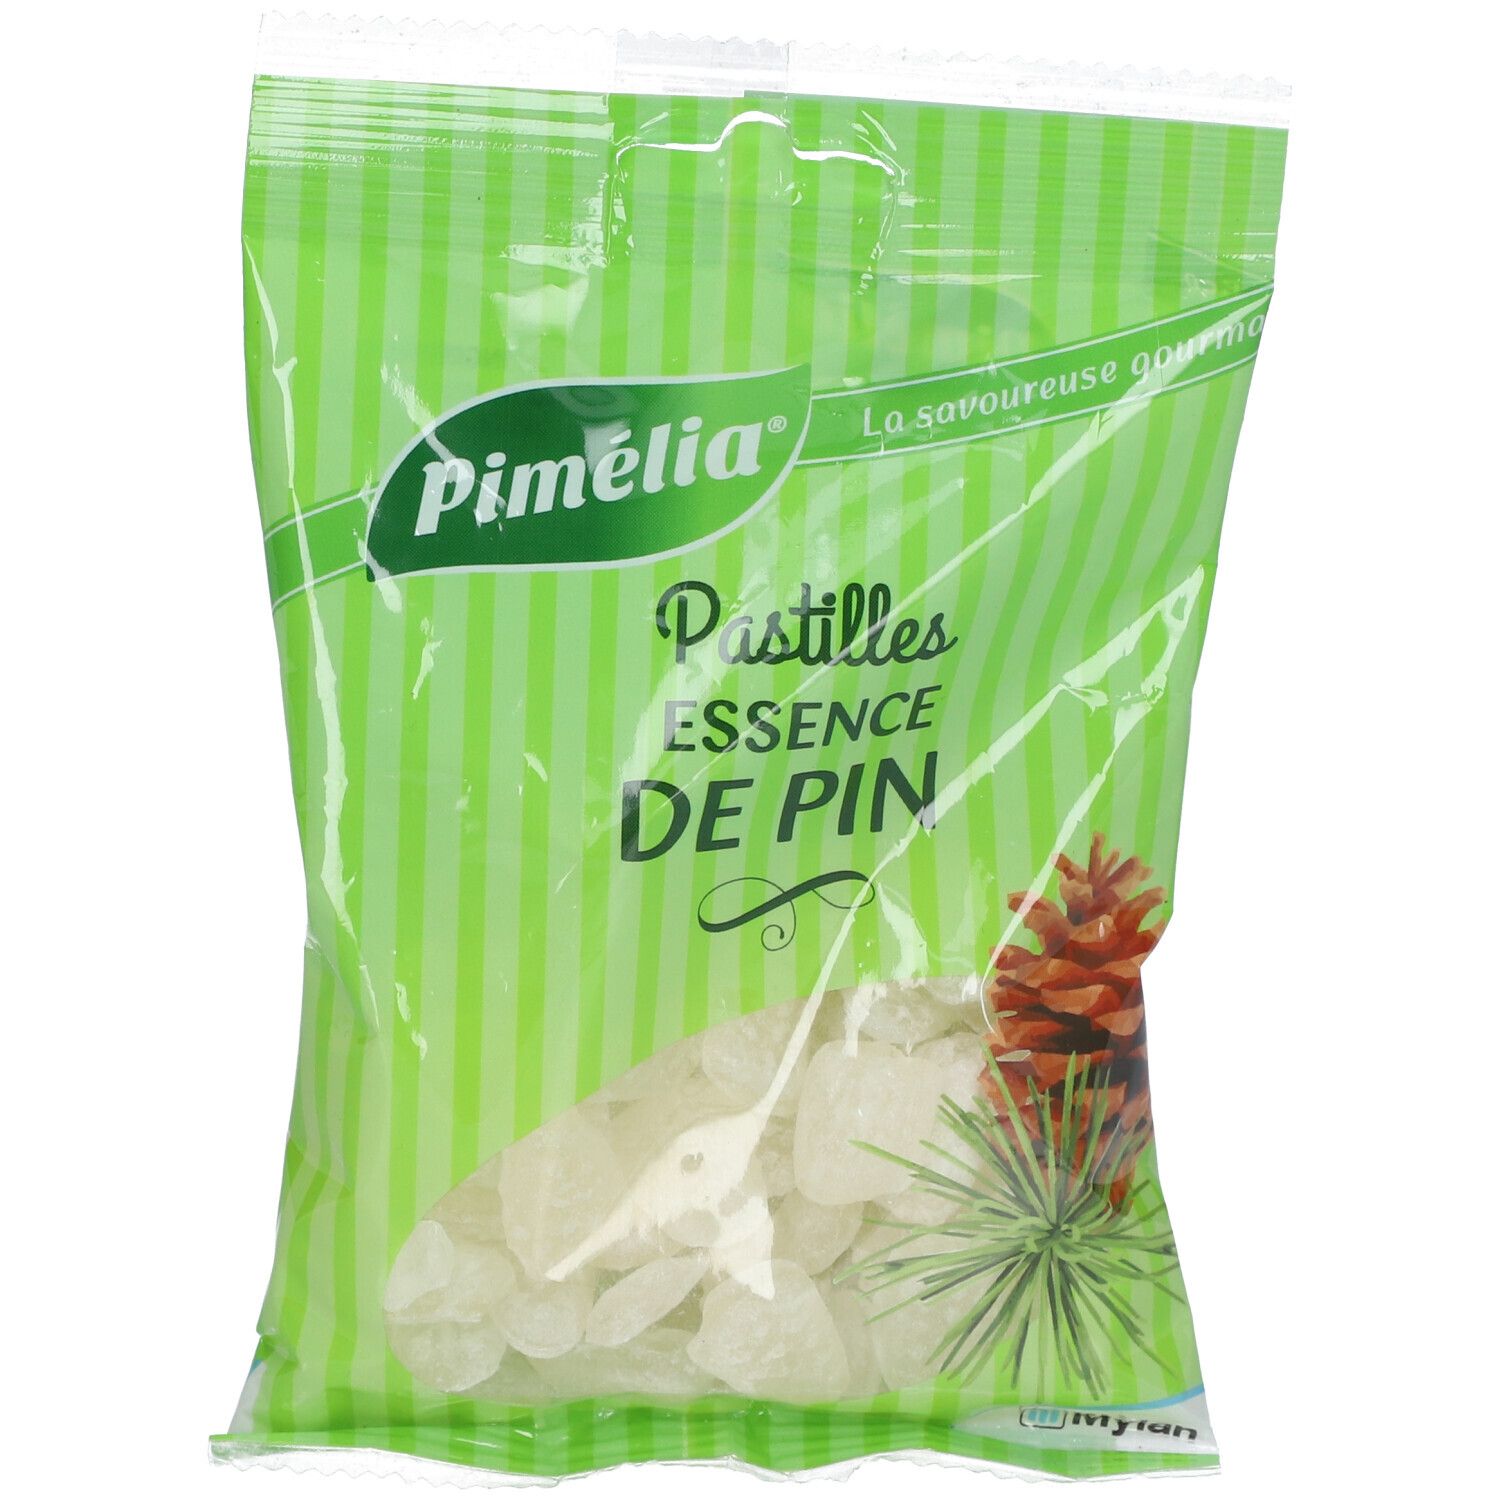 Pimélia Pastilles Essence de Pin